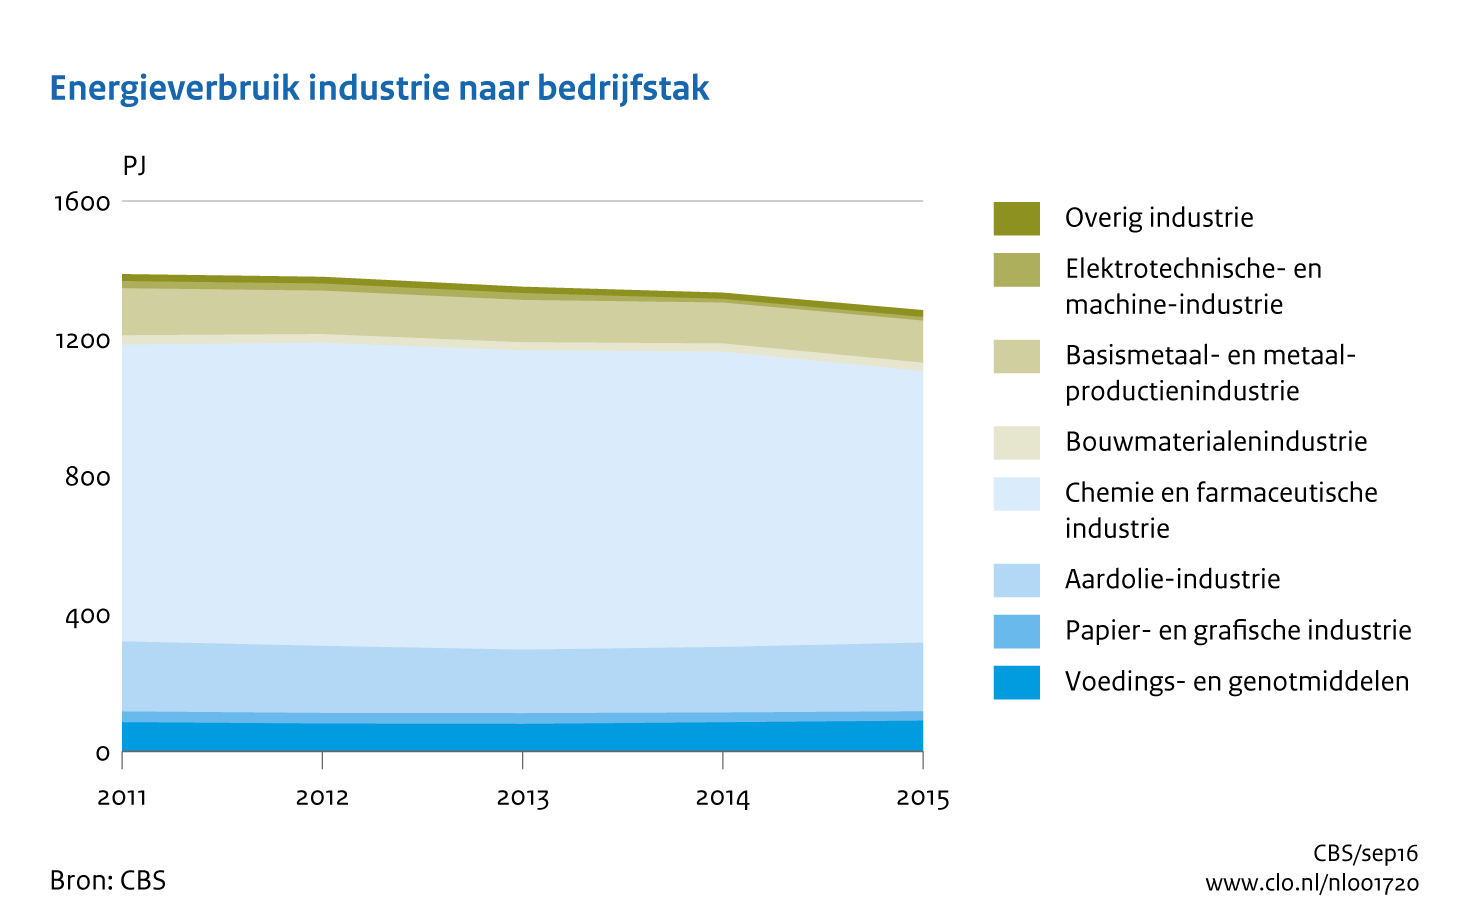 Figuur Energieverbruik industrie naar bedrijfstak 2011-2015. In de rest van de tekst wordt deze figuur uitgebreider uitgelegd.